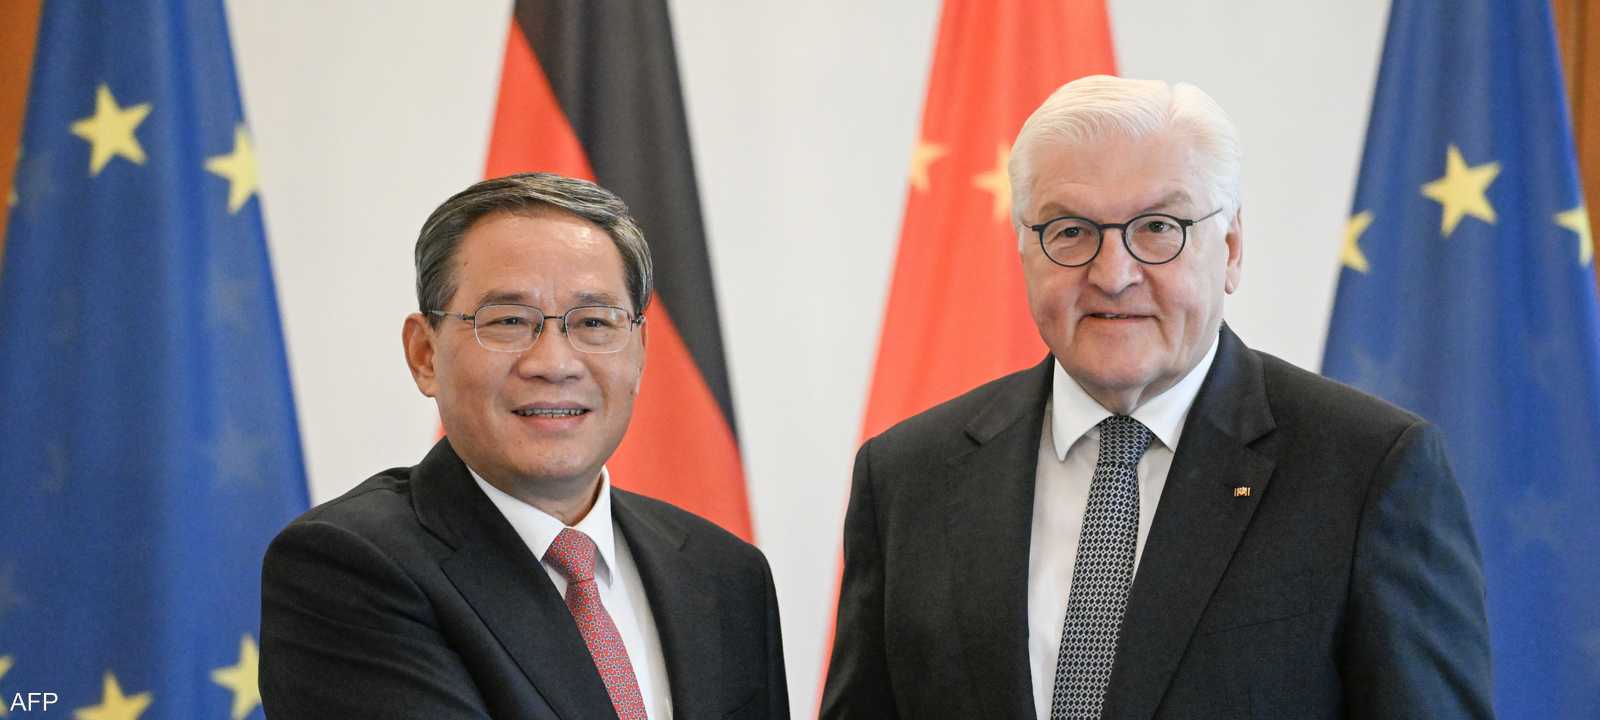 الرئيس الألماني ورئيس الوزراء الصيني